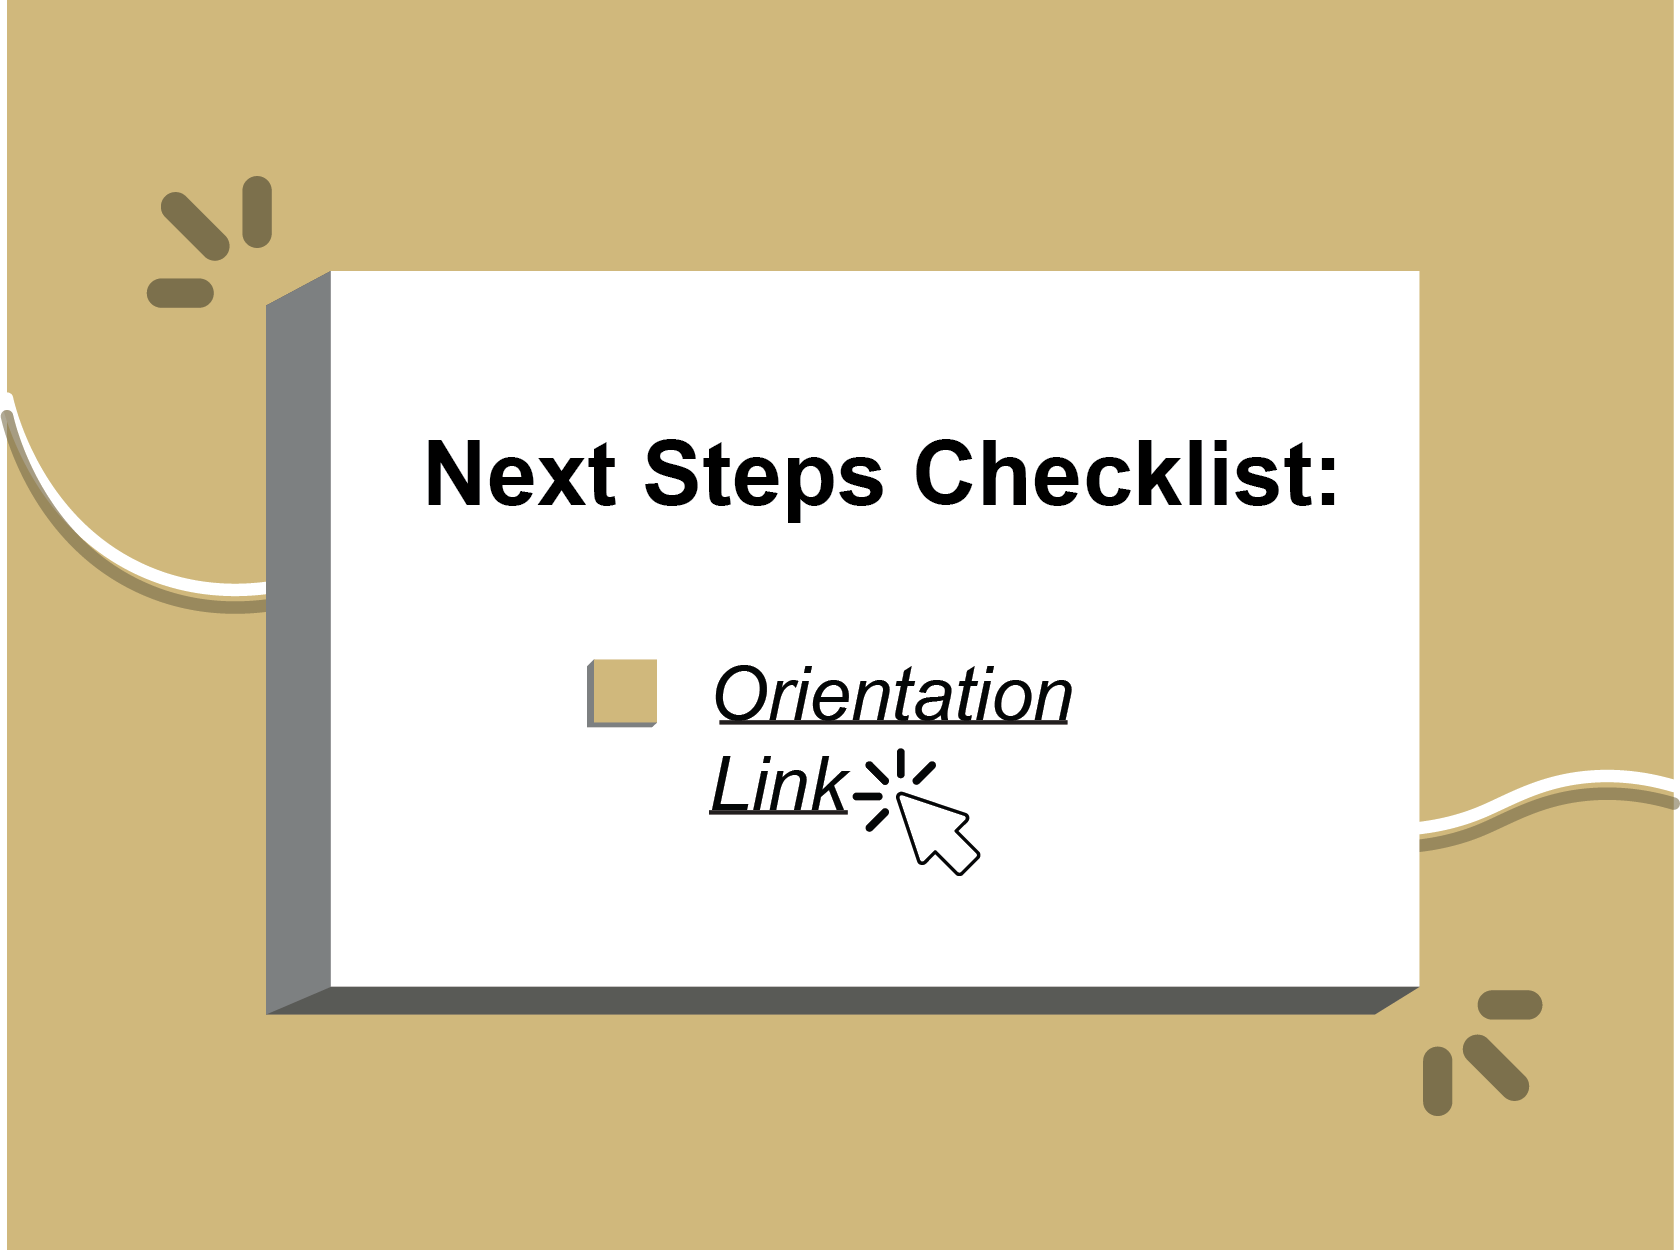 next steps checklist: orientation link